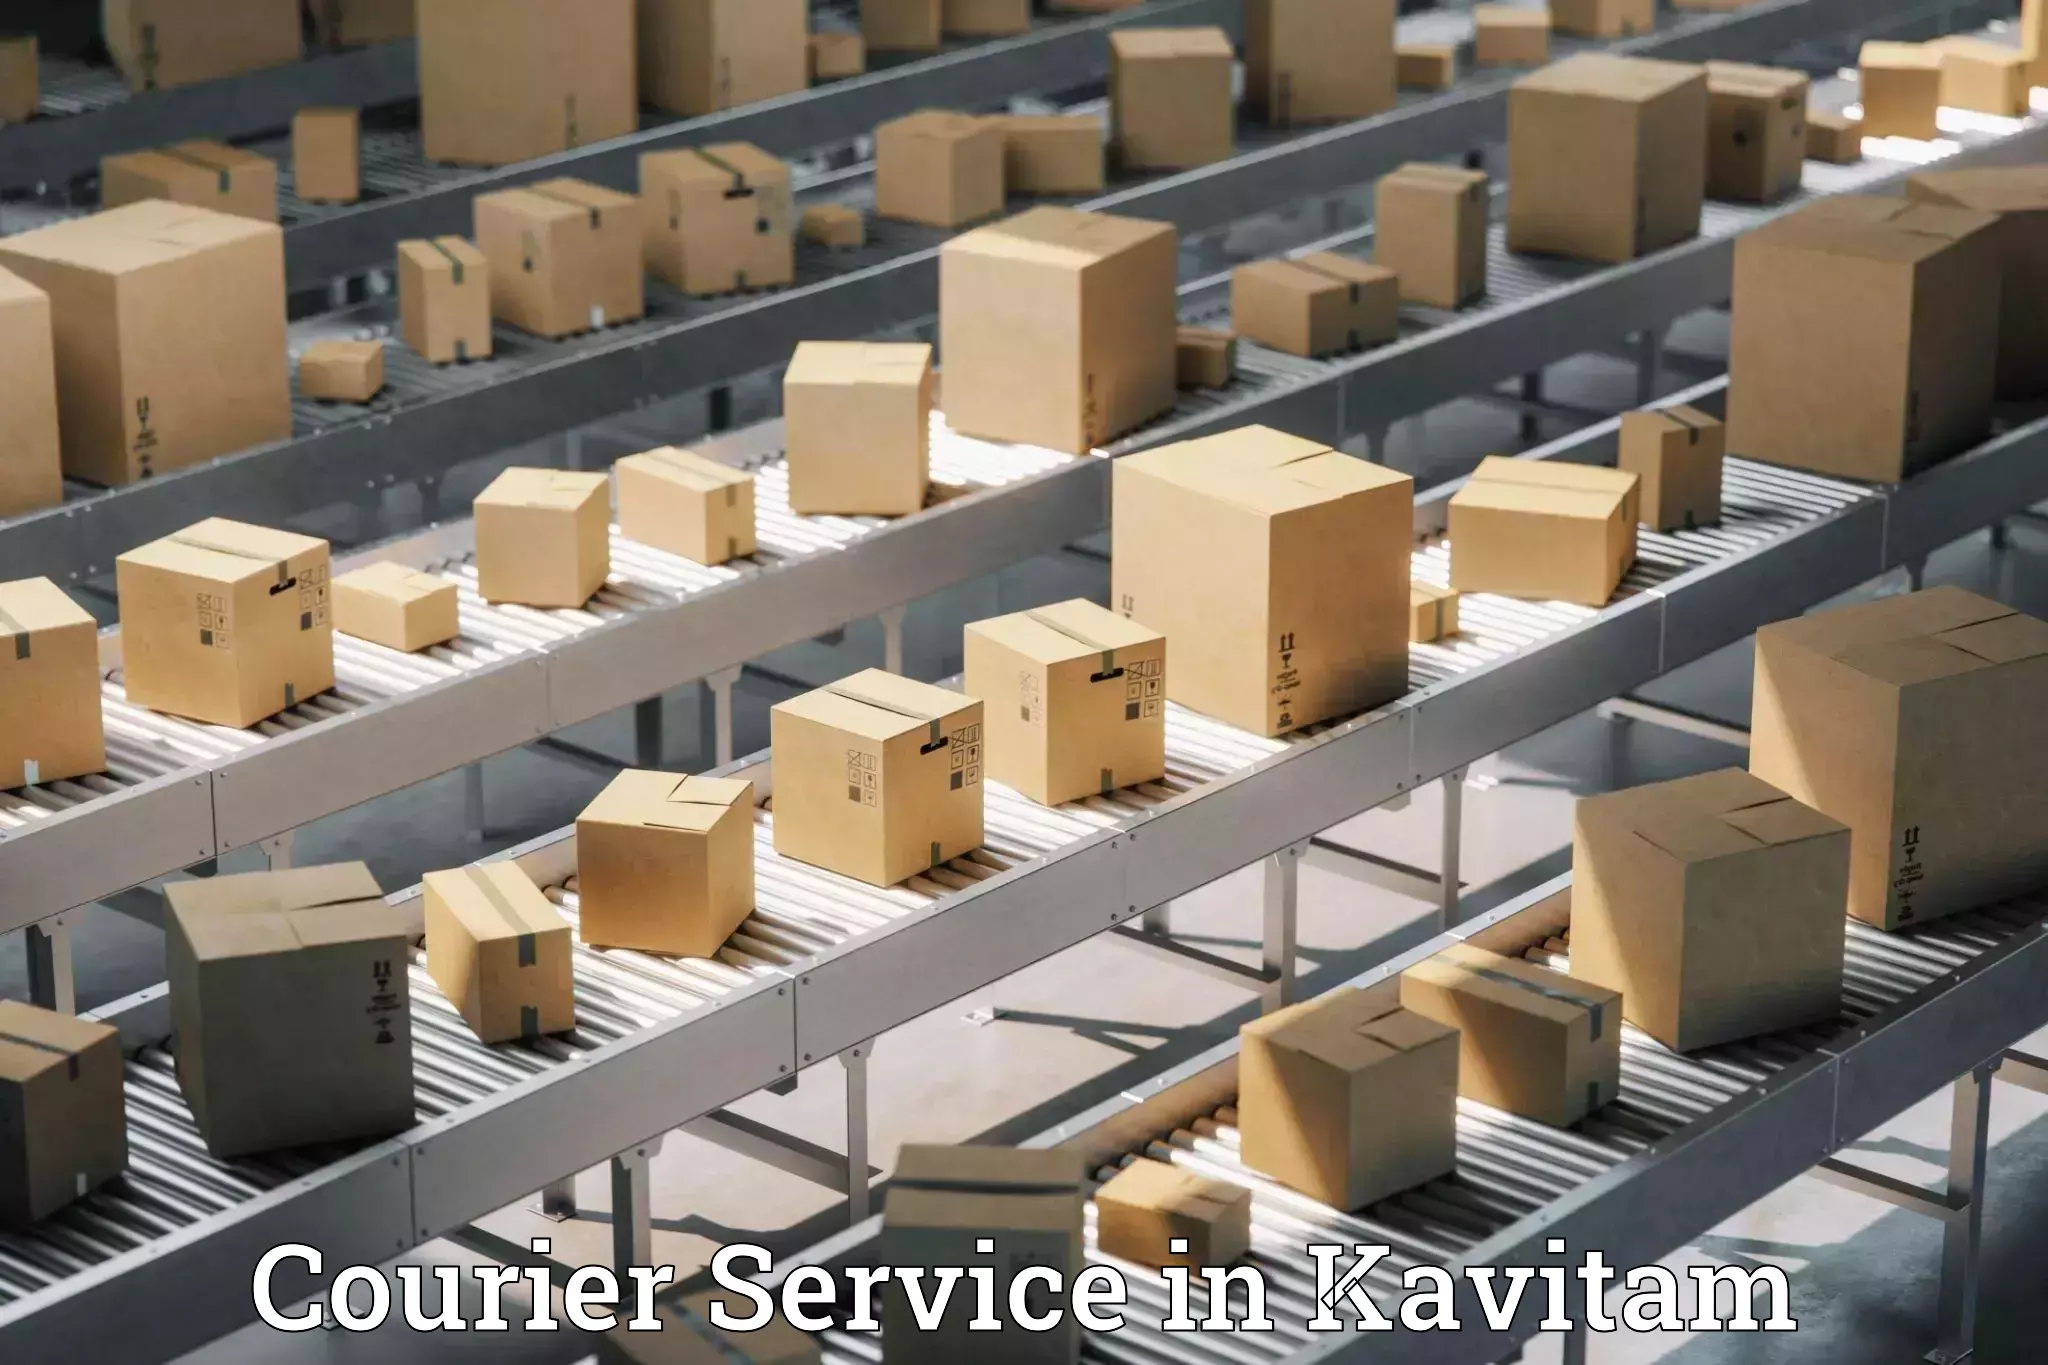 Efficient freight service in Kavitam